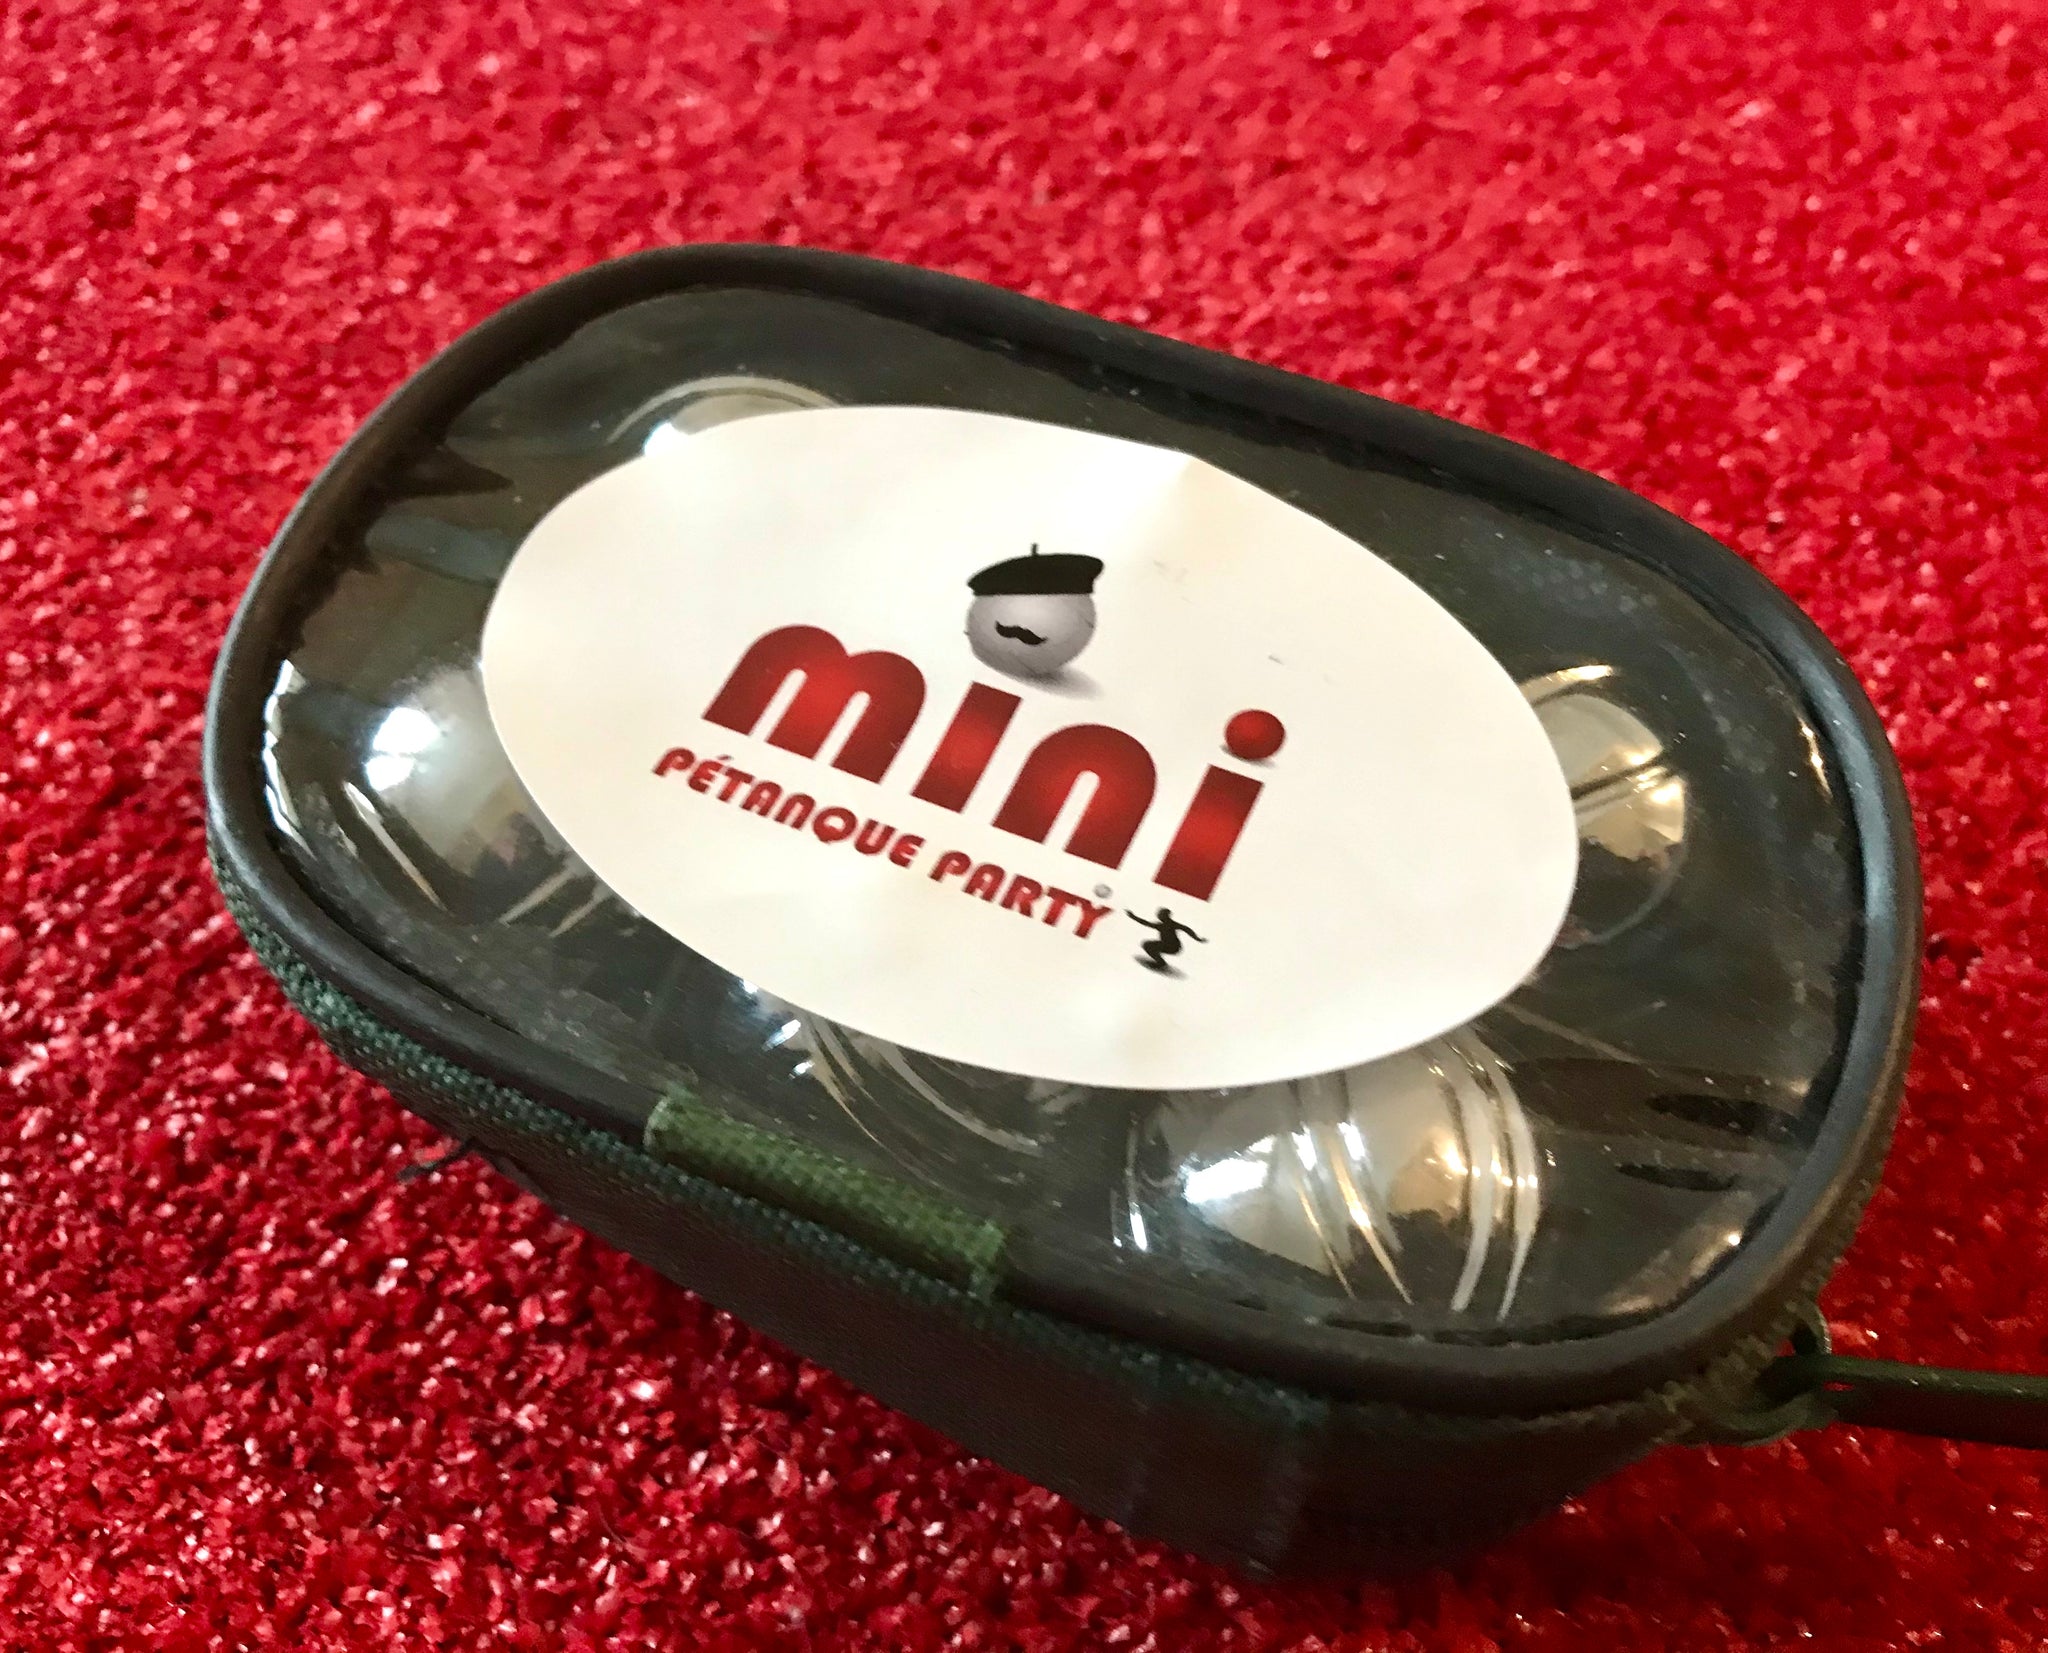 Sacoche 6 MINI Boules de MINI Petanque Party ® – MINI Pétanque Party